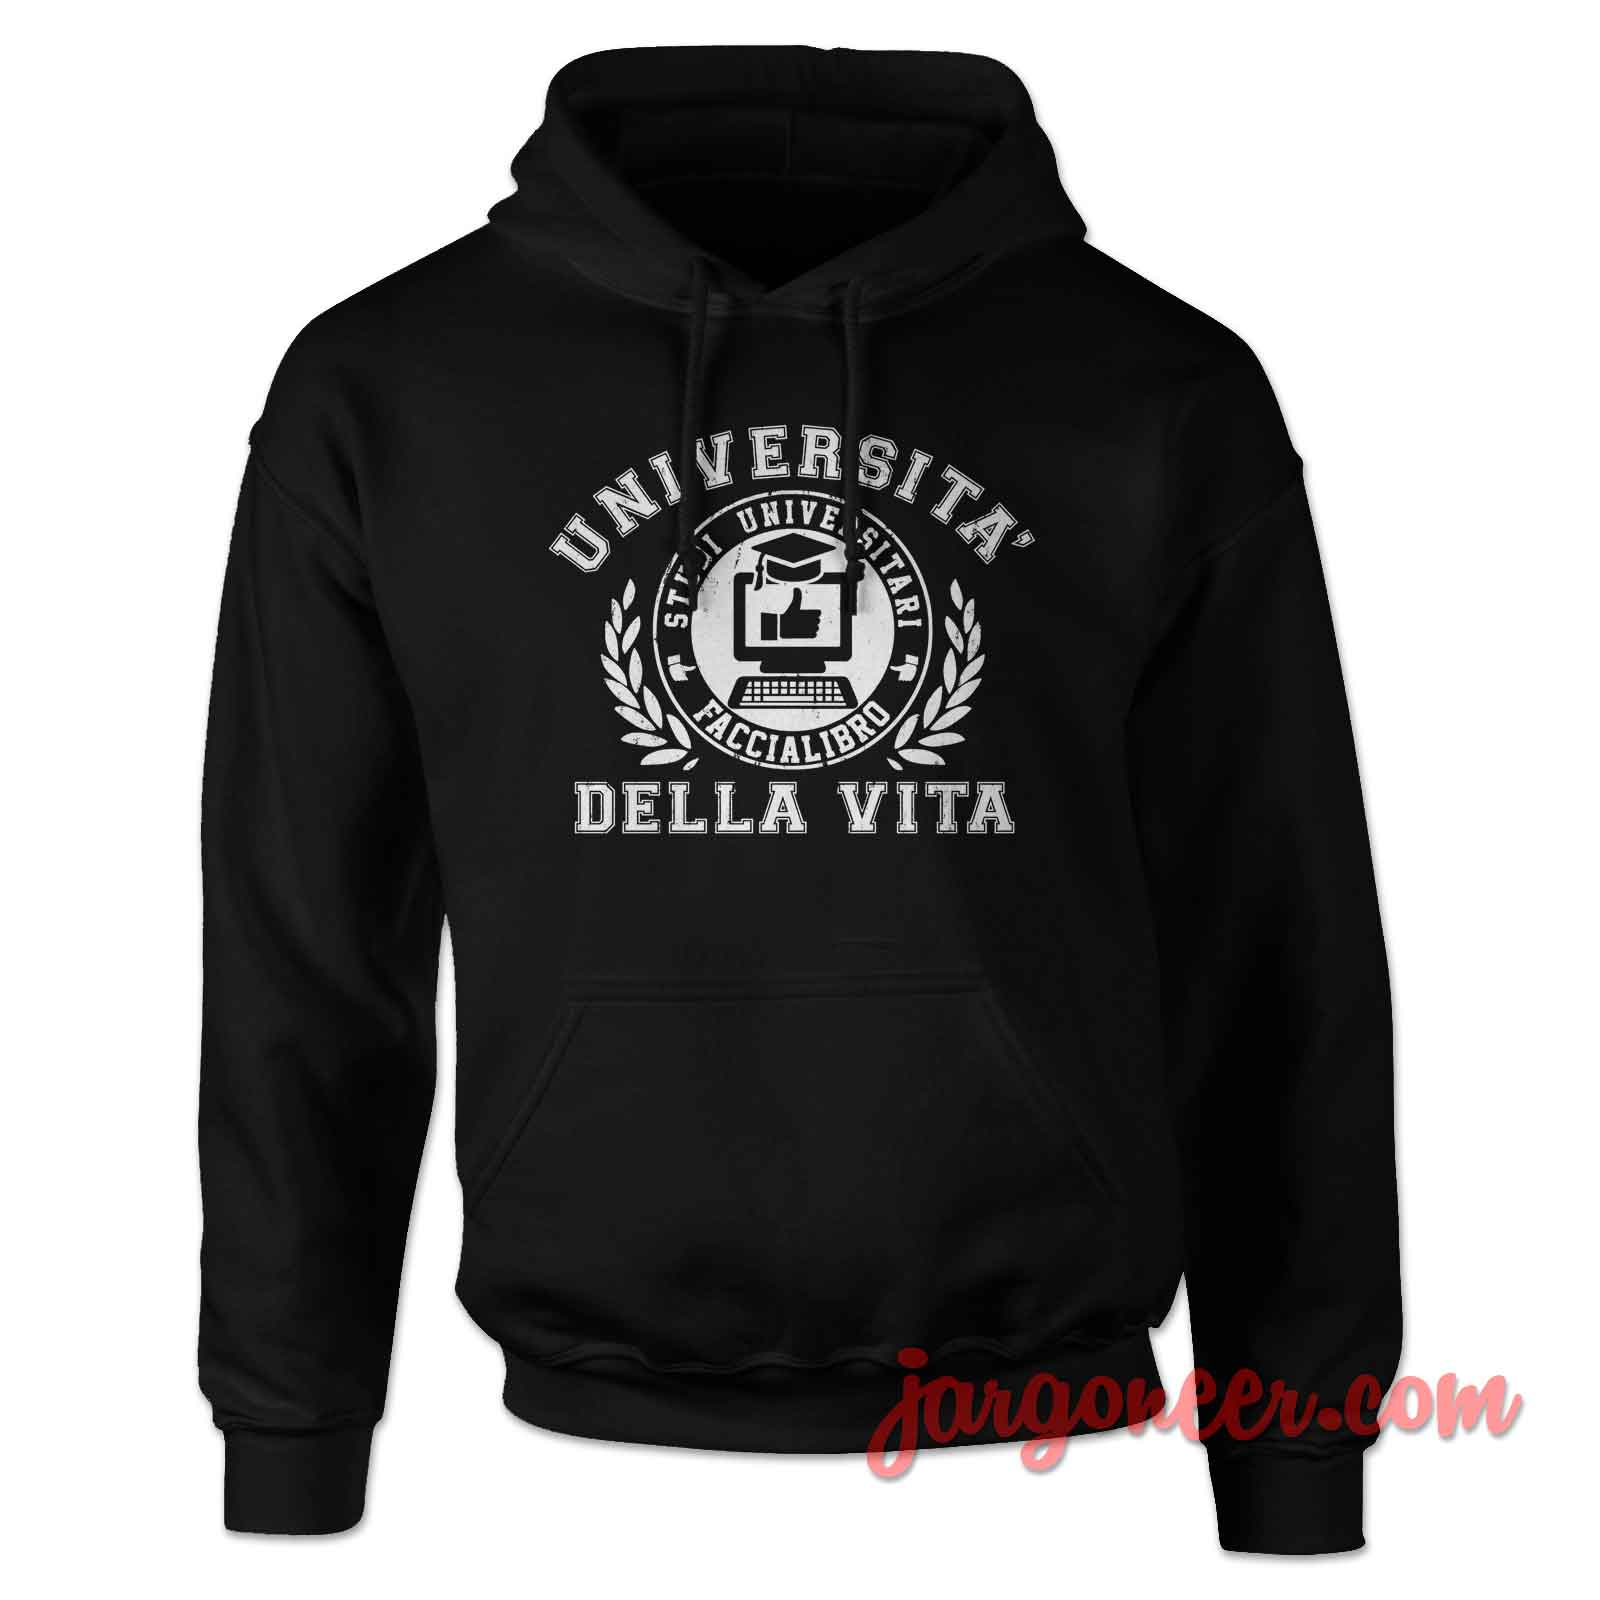 Universita Della Vita - Shop Unique Graphic Cool Shirt Designs